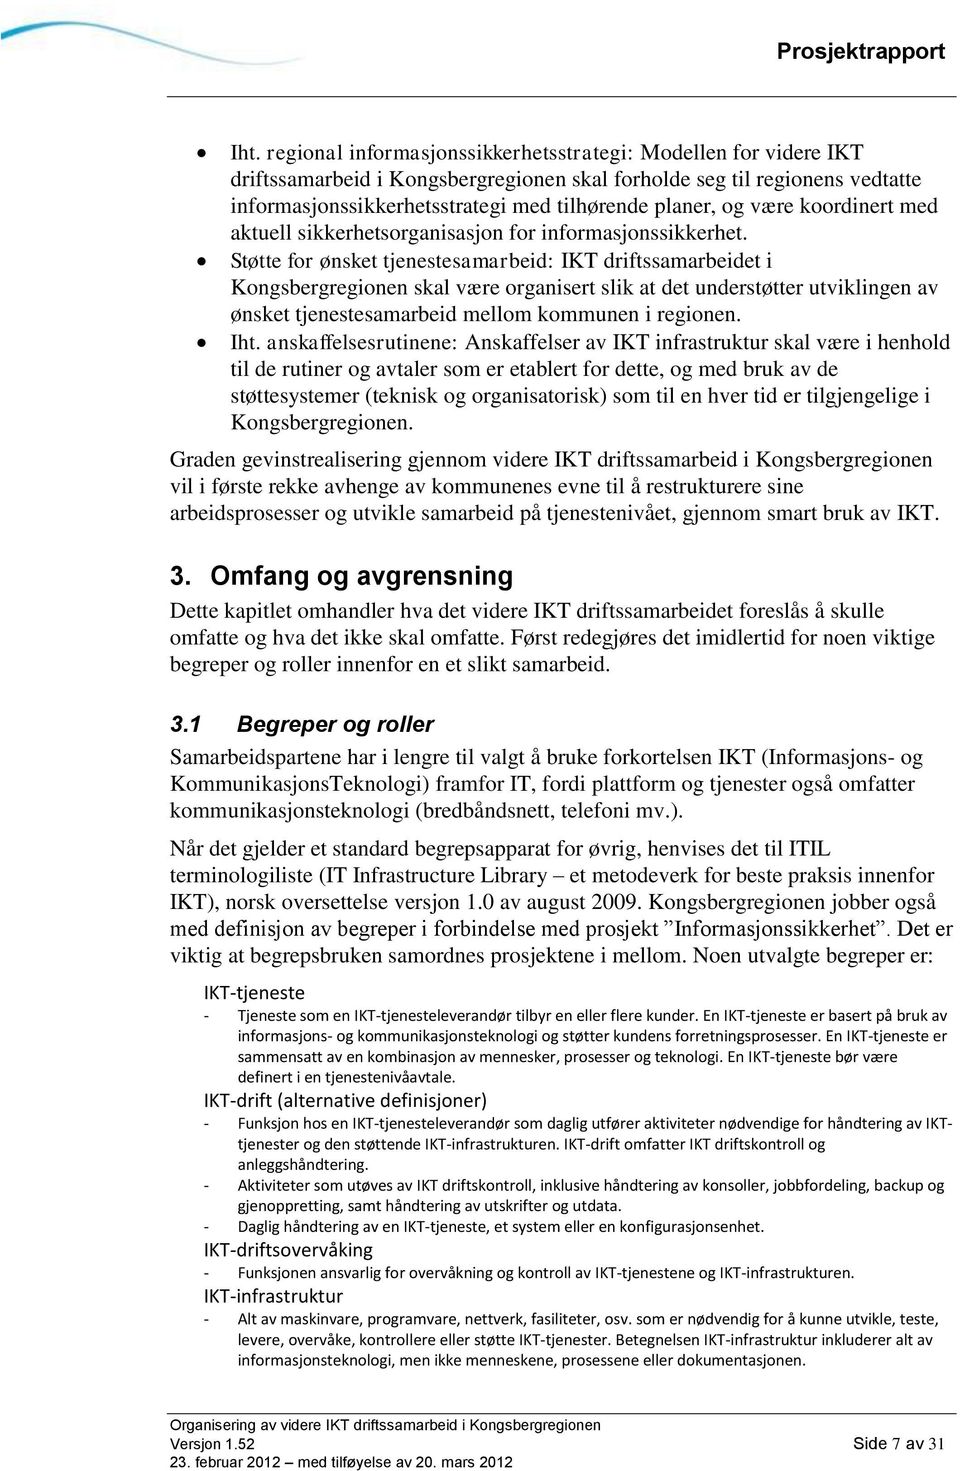 Støtte for ønsket tjenestesamarbeid: IKT driftssamarbeidet i Kongsbergregionen skal være organisert slik at det understøtter utviklingen av ønsket tjenestesamarbeid mellom kommunen i regionen. Iht.